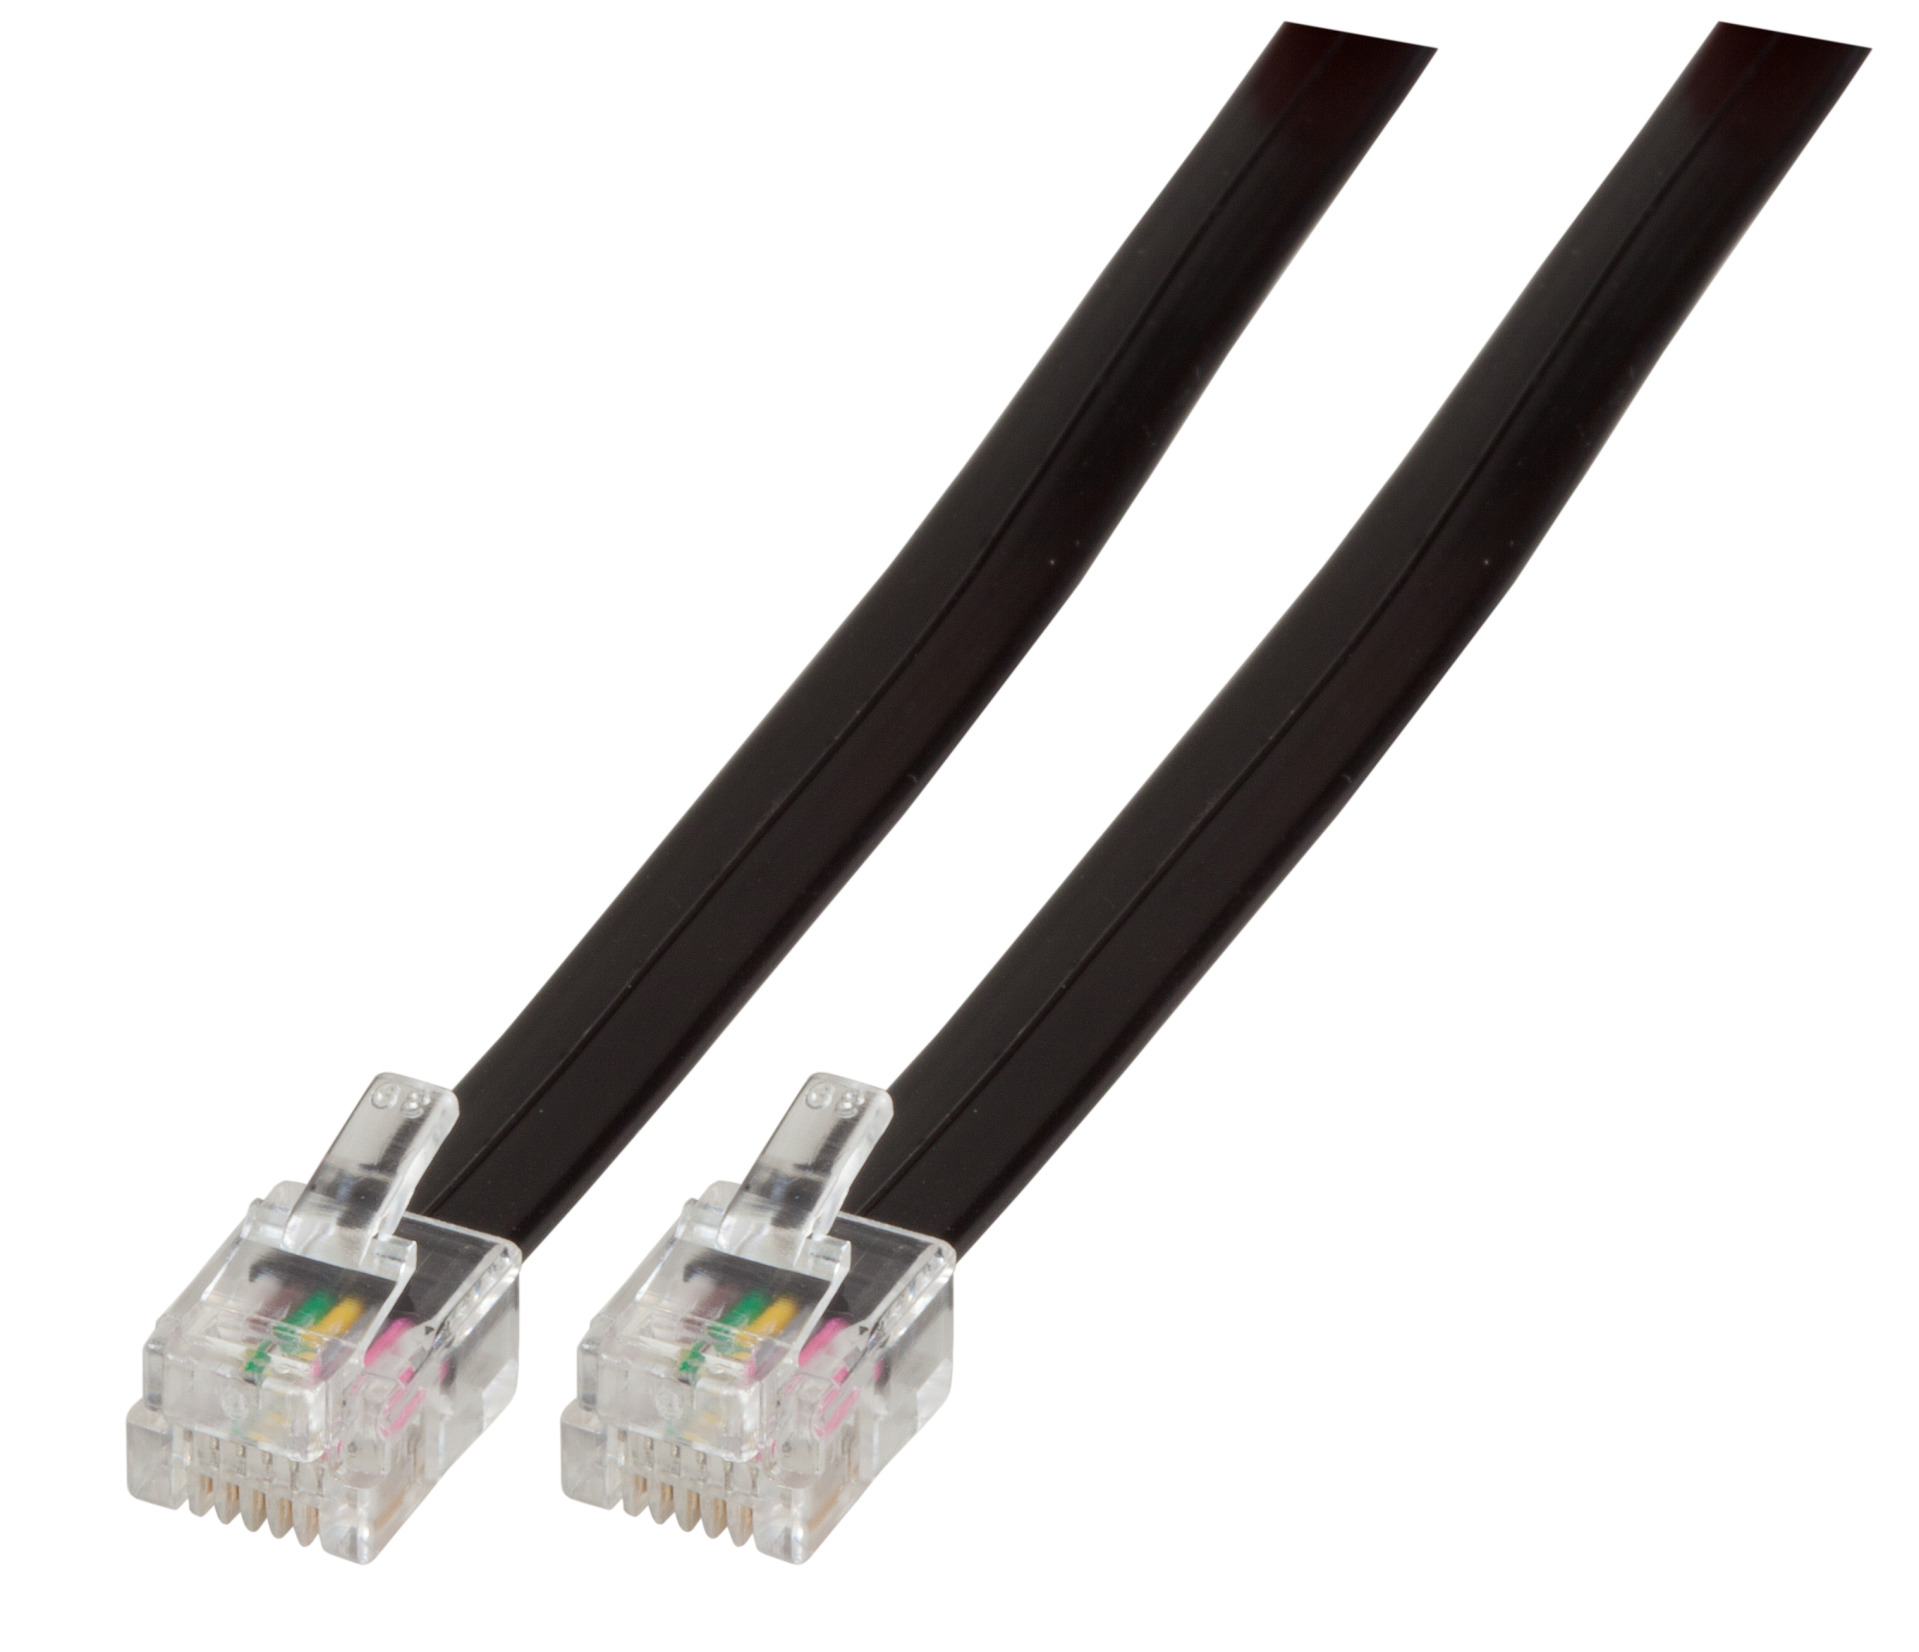 Modular Cable RJ12 (6/6) / RJ12 (6/6), 1:1, Black, 6 m